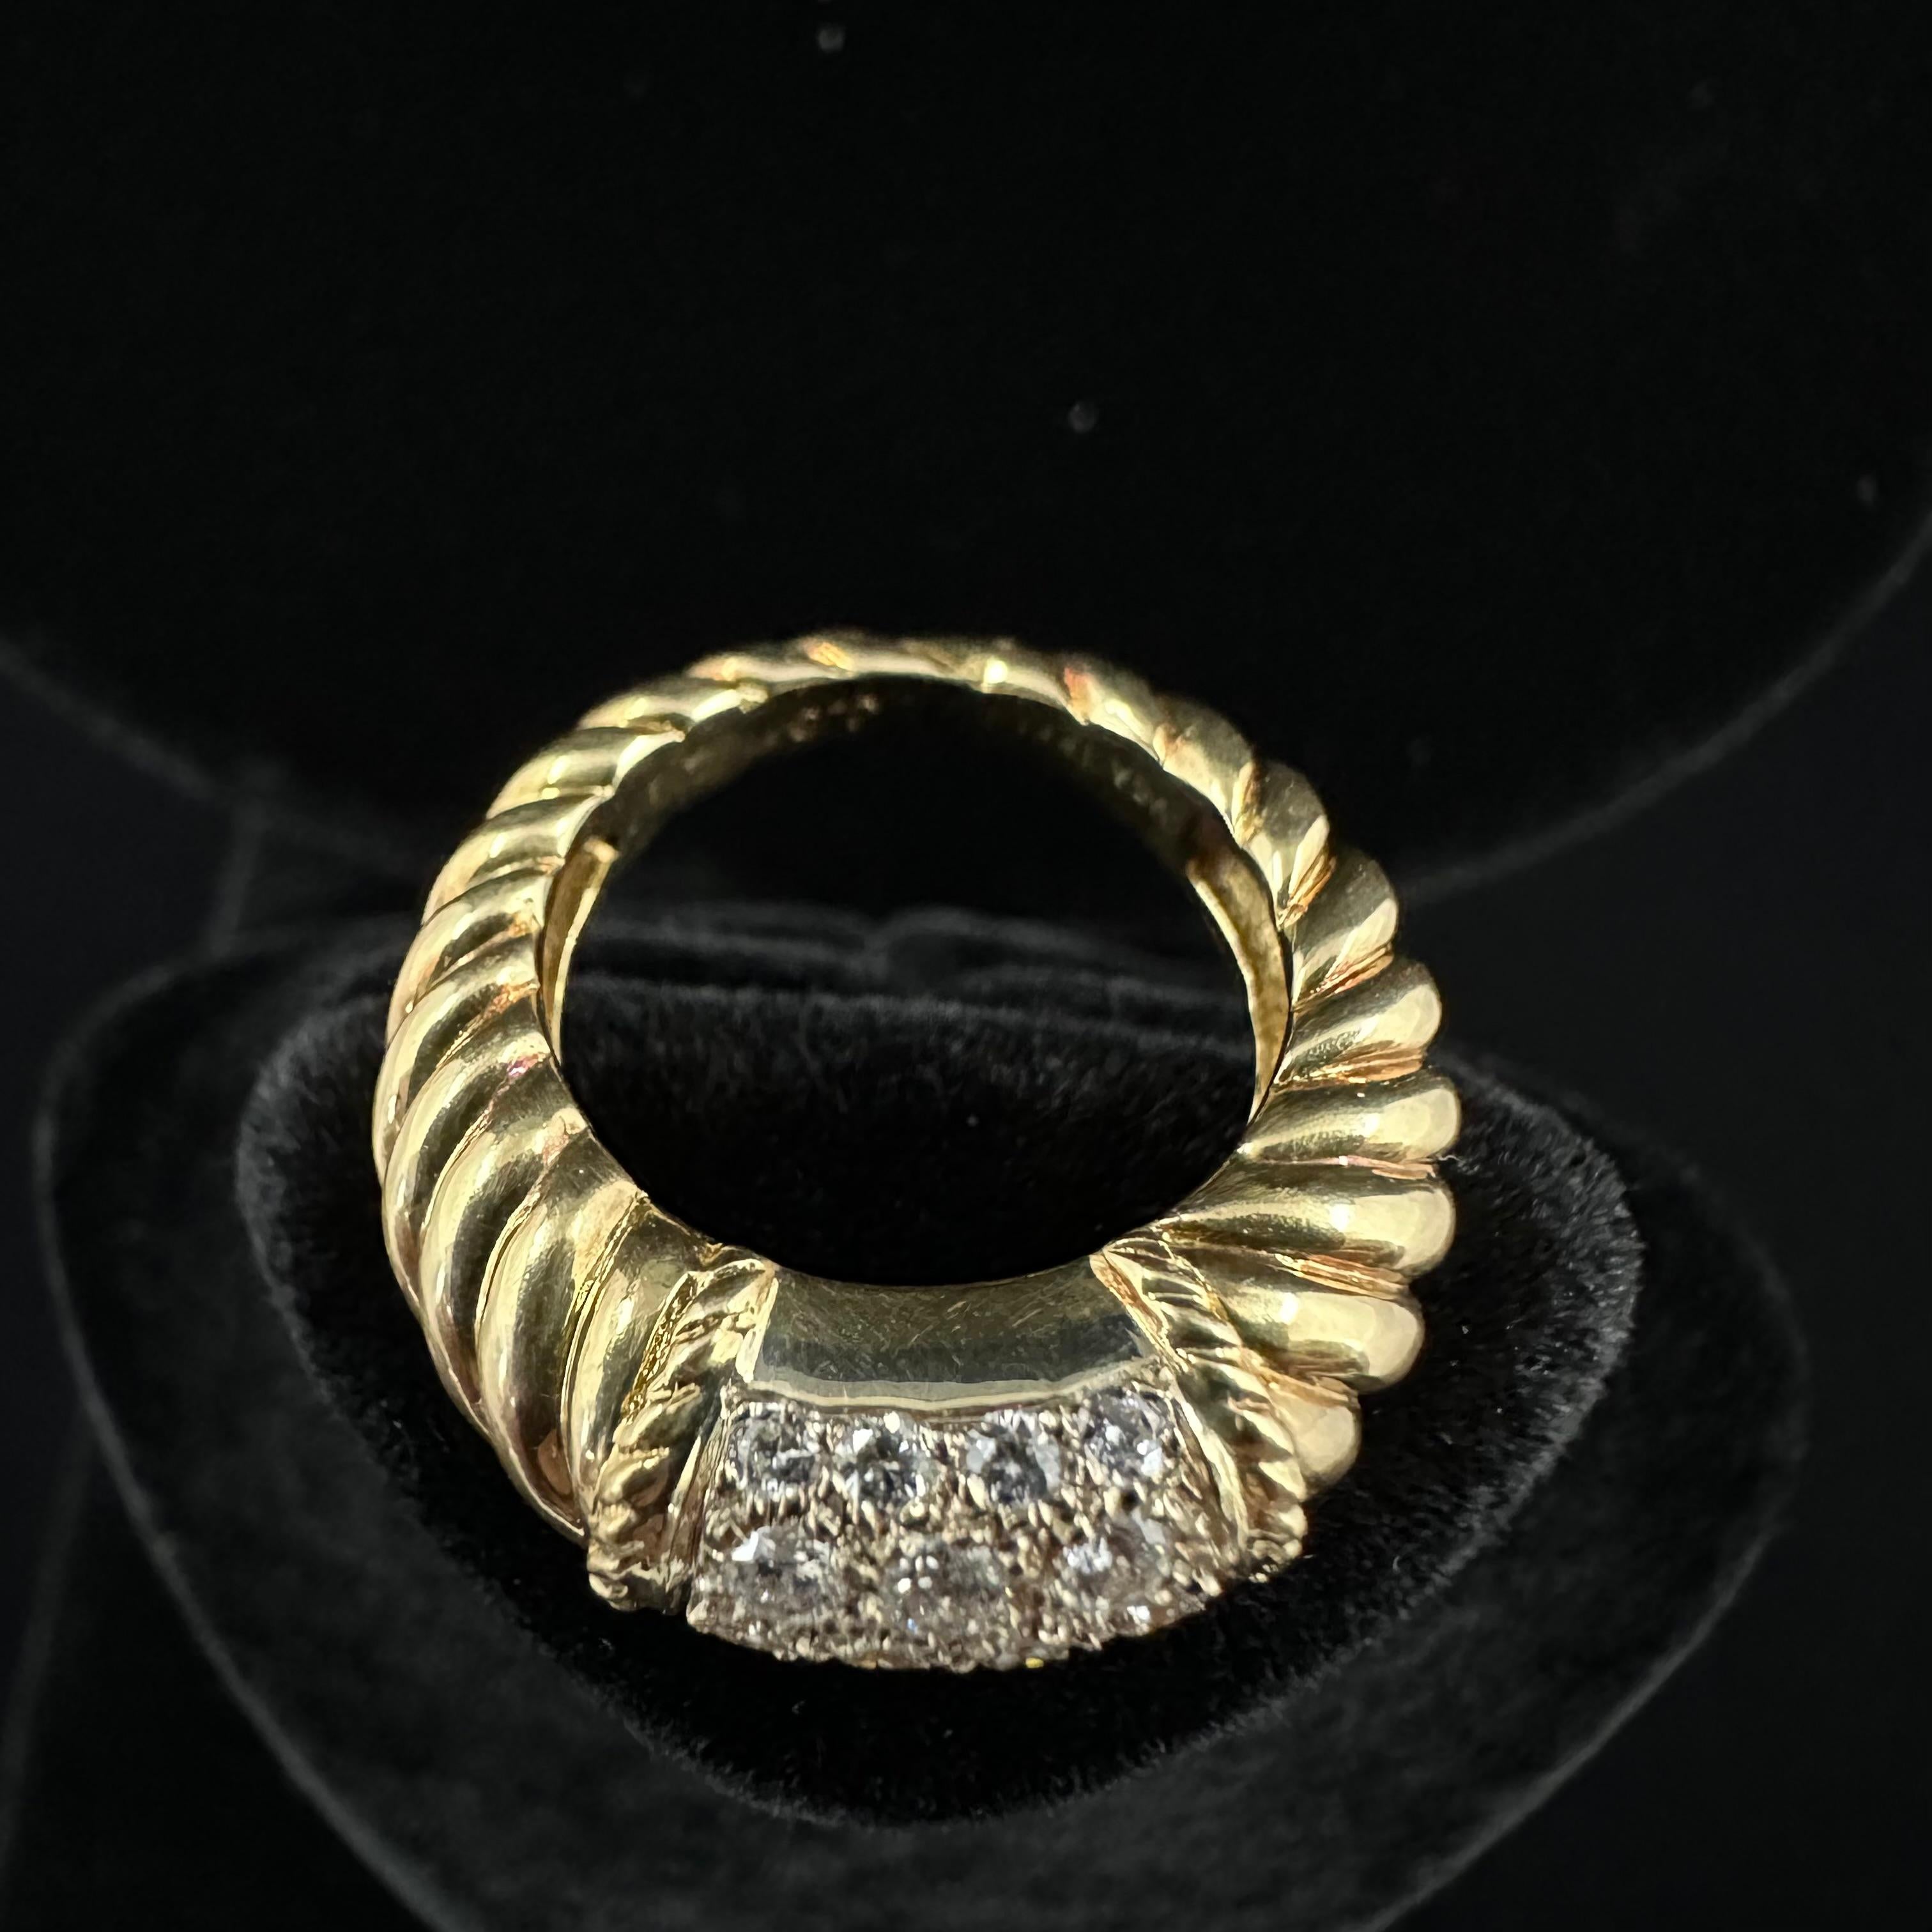 Rough Cut Van Cleef & Arpels Philippine Diamond ring 